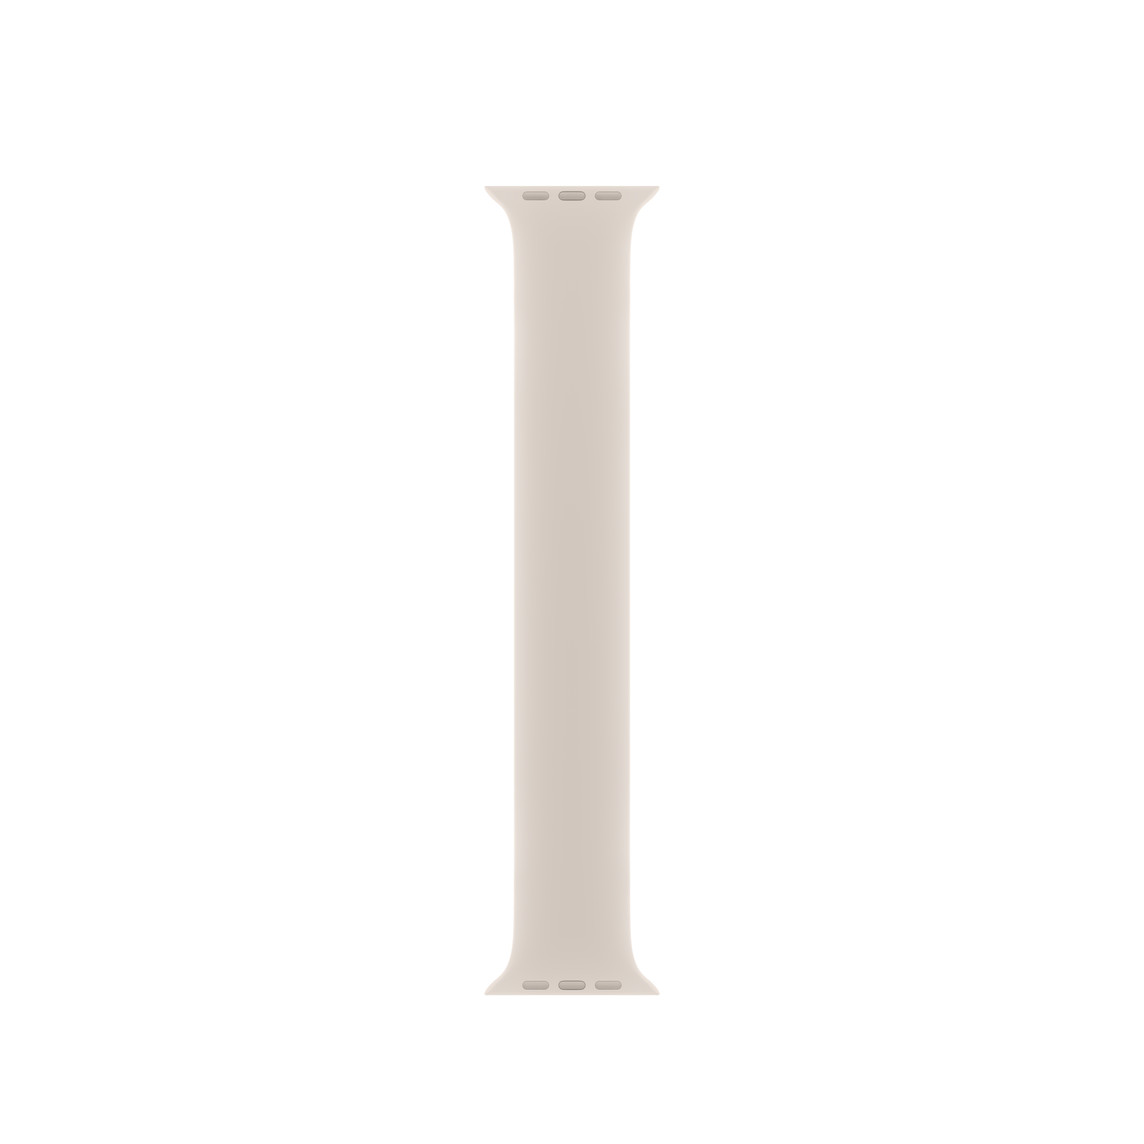 Correa uniloop blanco estelar, hecha de goma de silicón suave sin hebillas ni cierres